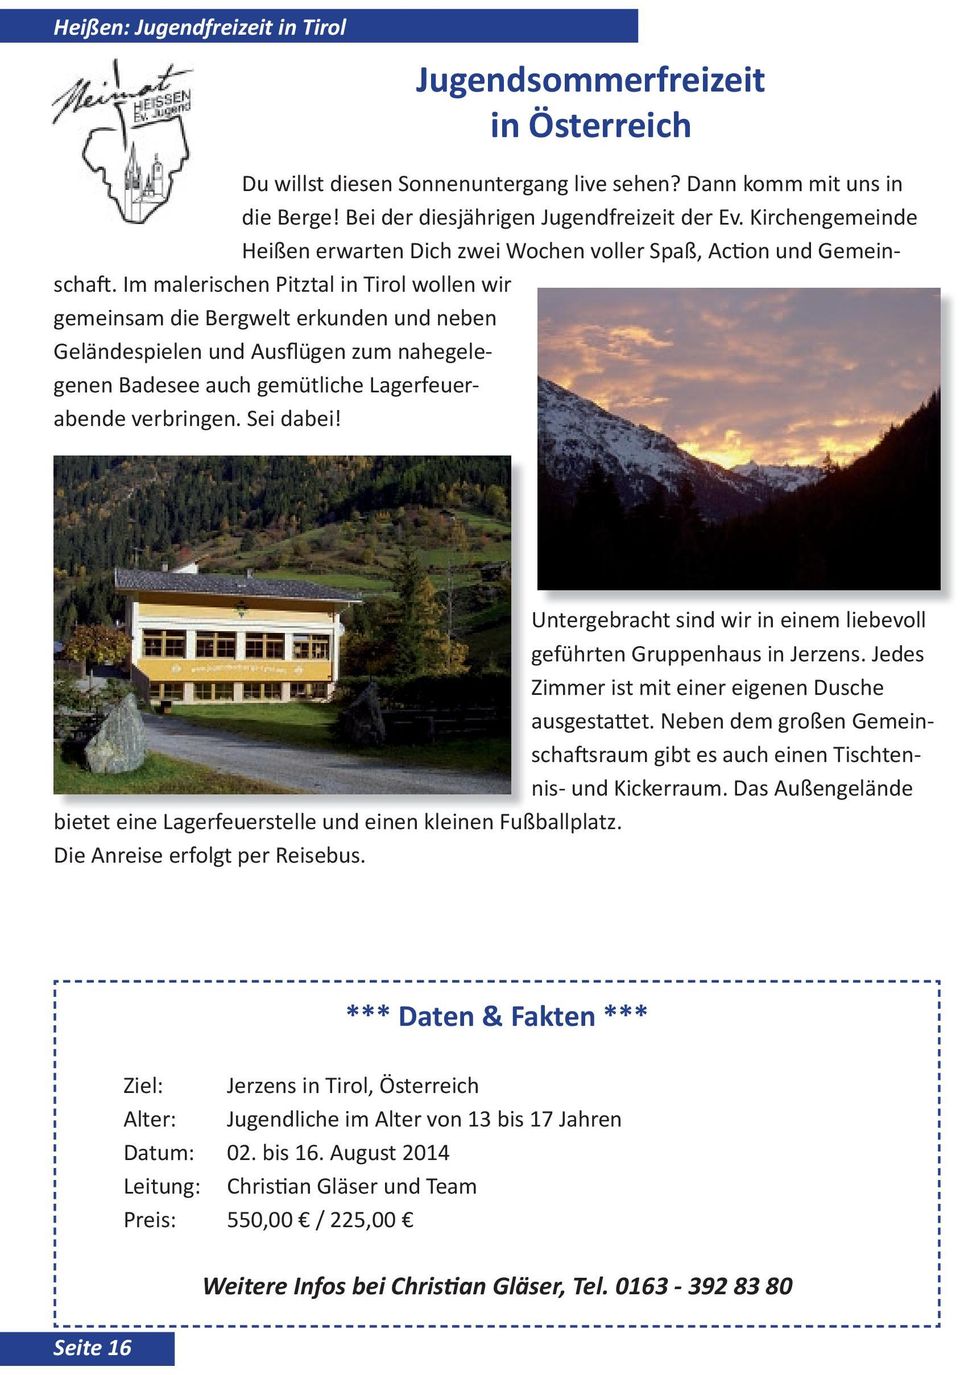 Im malerischen Pitztal in Tirol wollen wir gemeinsam die Bergwelt erkunden und neben Geländespielen und Ausflügen zum nahegelegenen Badesee auch gemütliche Lagerfeuerabende verbringen. Sei dabei!